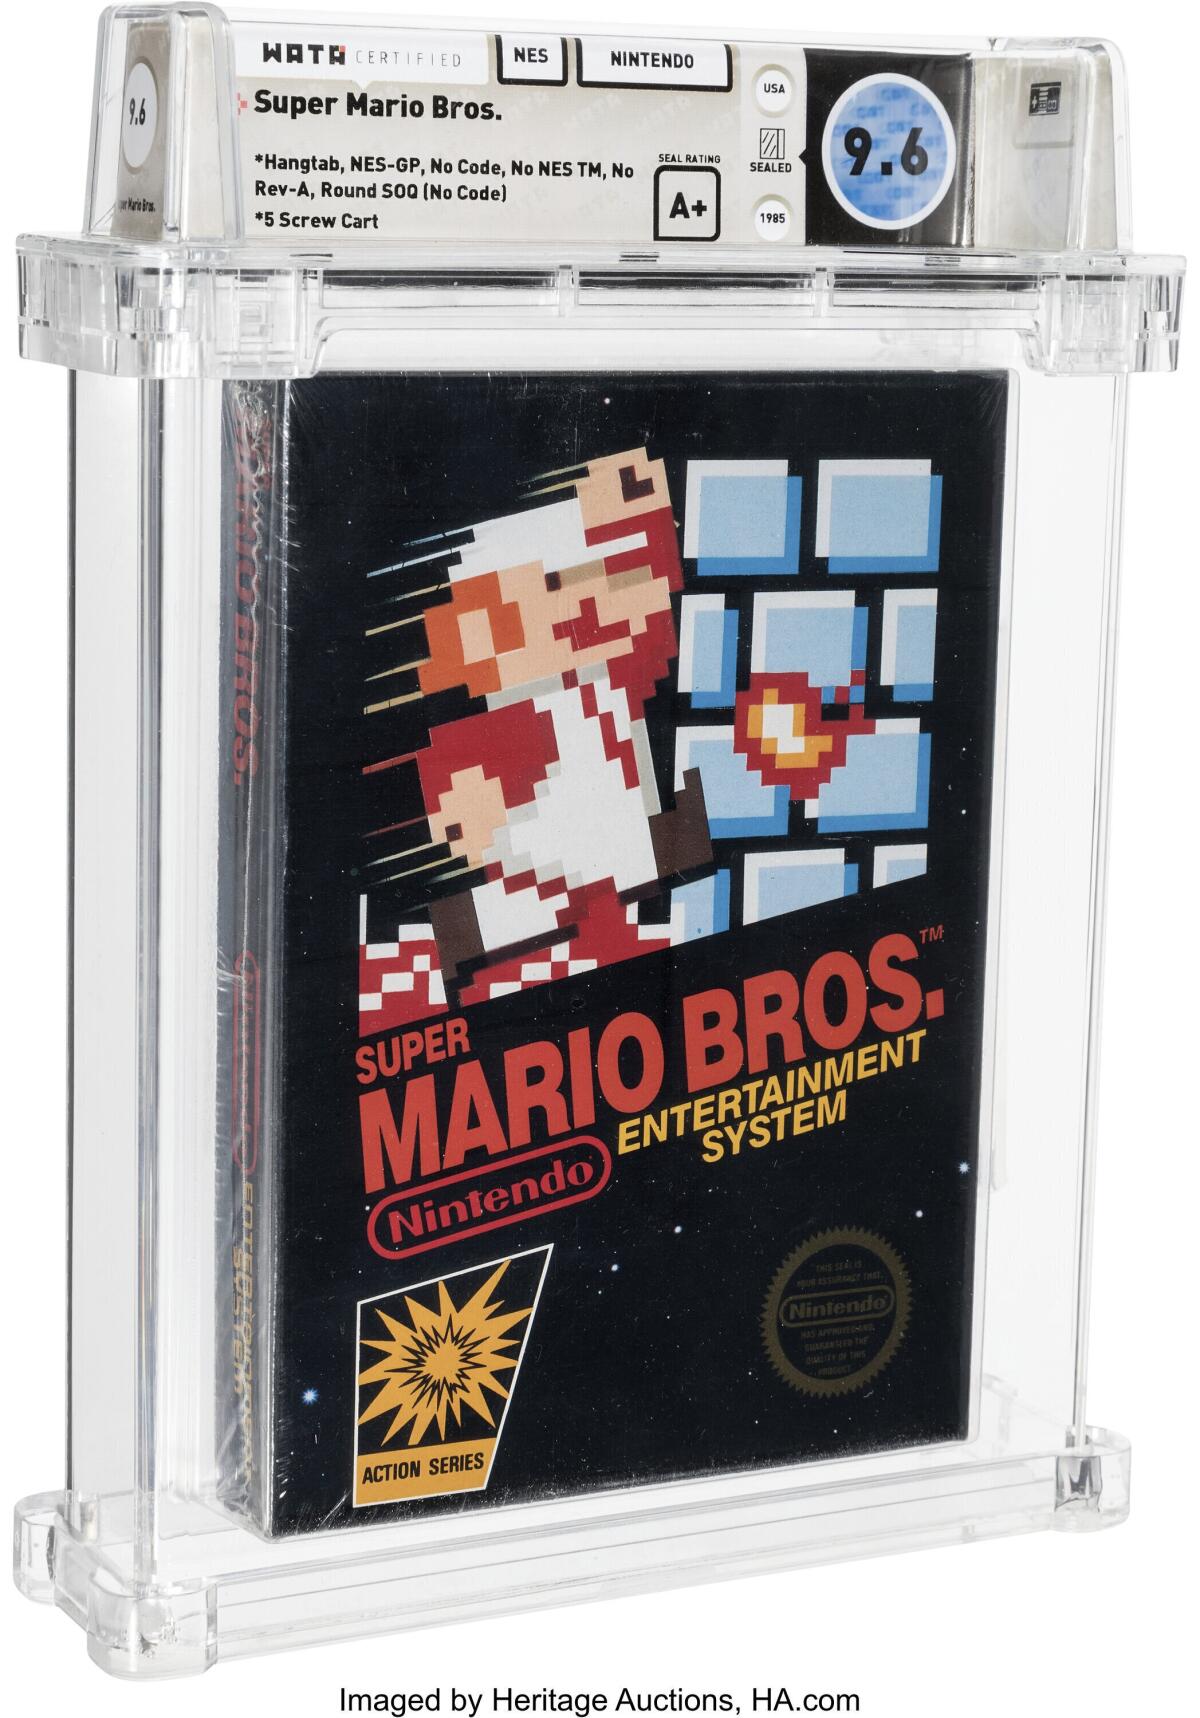 Esta foto facilitada por Heritage Auctions muestra un cartucho sin abrir del juego Super Mario Bros., de Nintento